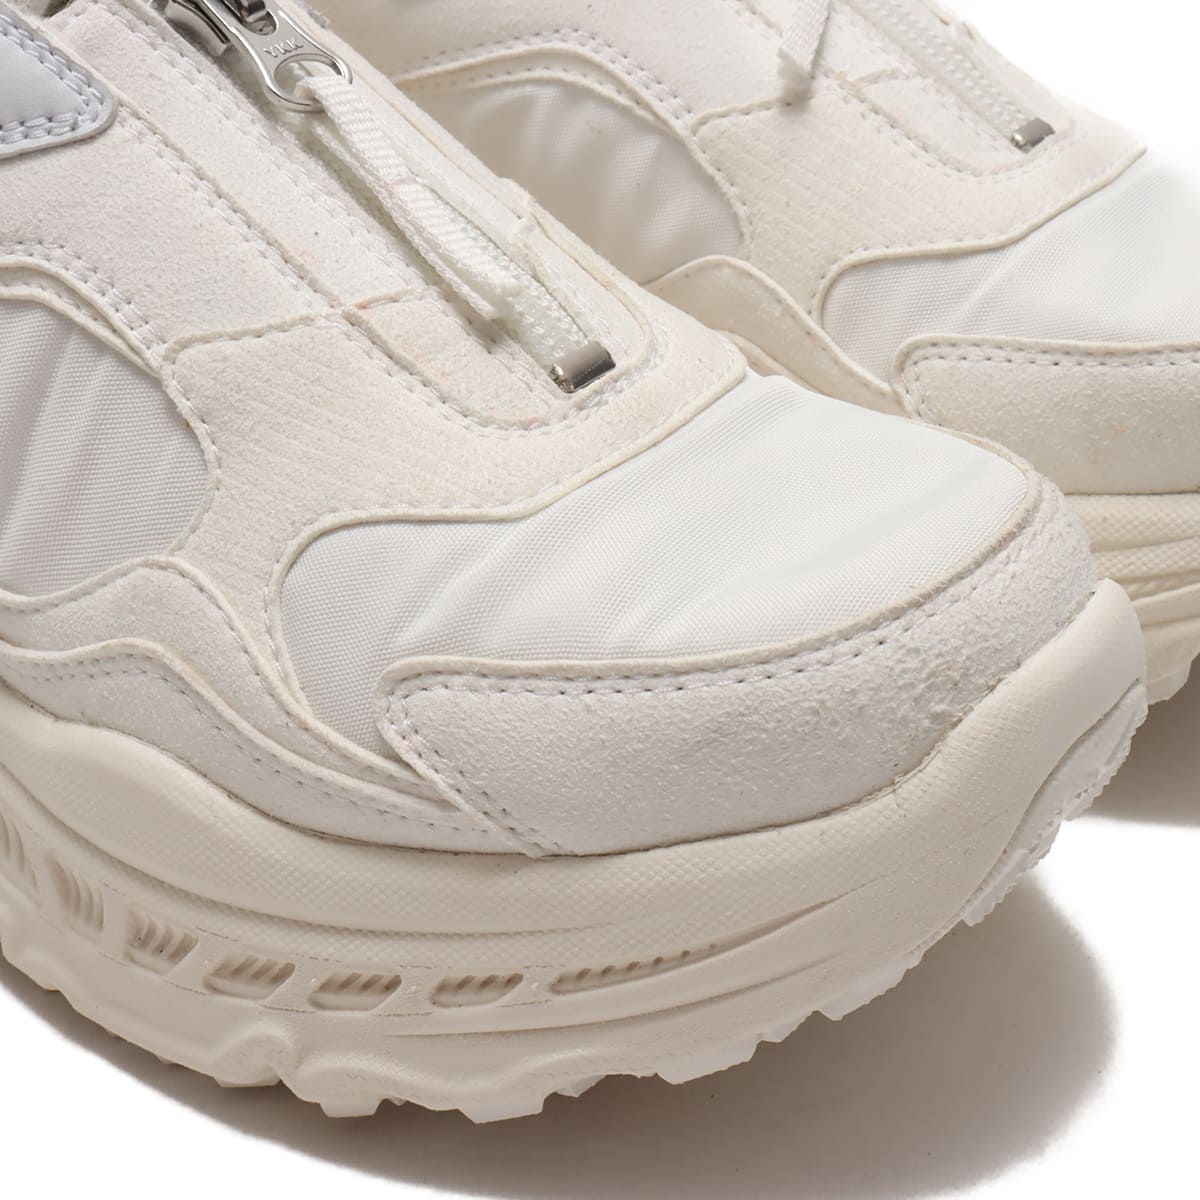 【送料無料】UGG CA805 Zip WHITE 21FW-I スニーカーbullurato靴